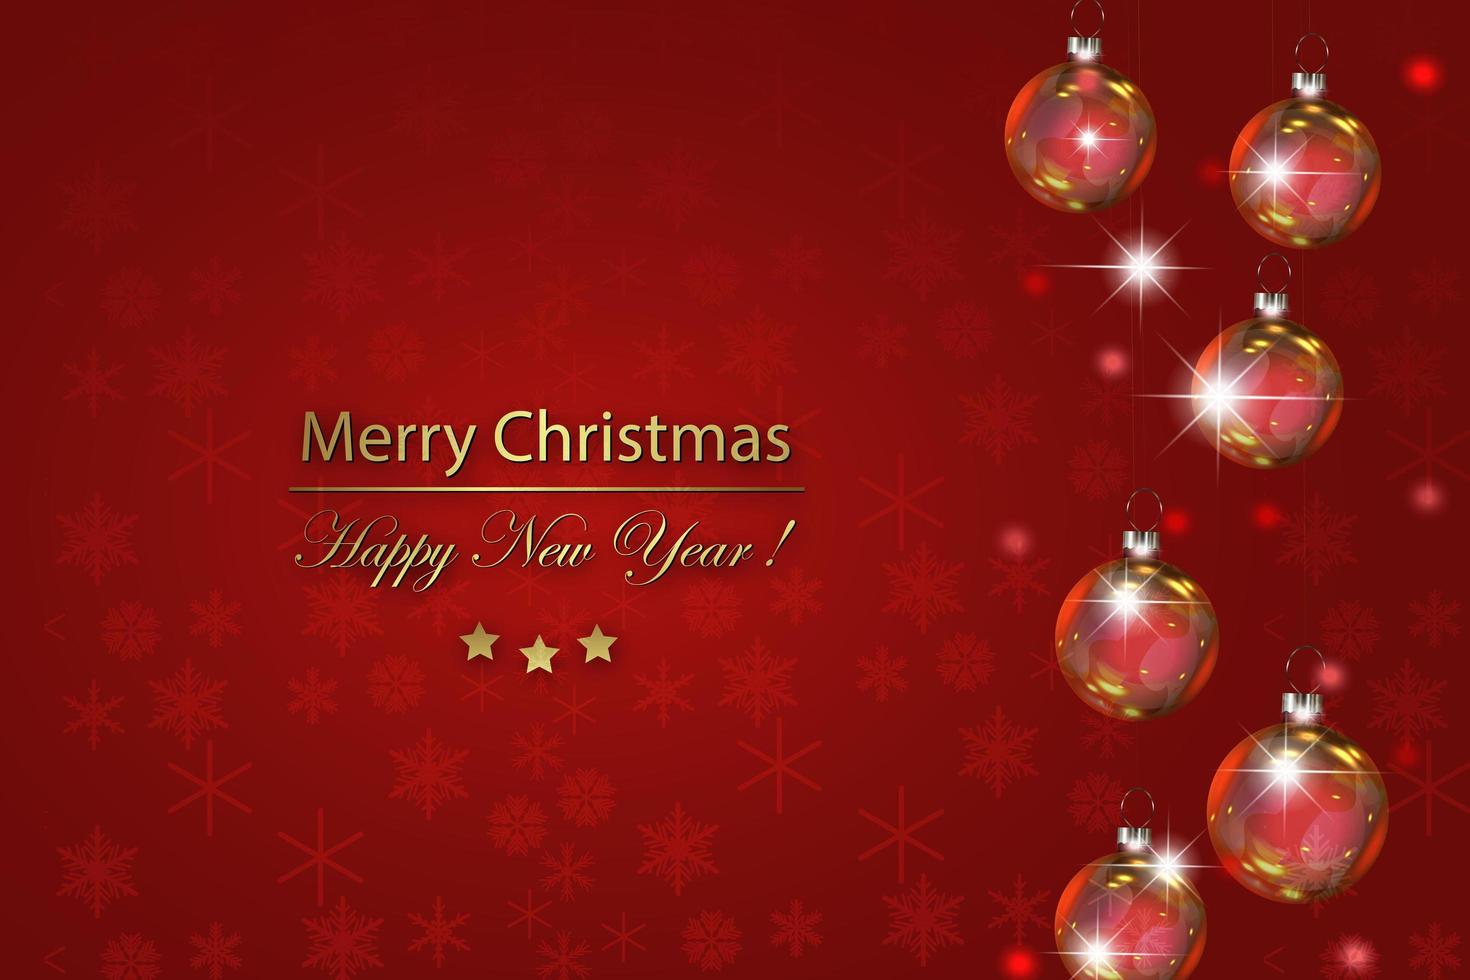 saludos de año nuevo y navidad con copos de nieve rojos brillantes bolas de cristal de árbol de navidad. ilustración de tarjeta de feliz navidad sobre fondo rojo. copos de nieve rojos brillantes con textura brillante vector